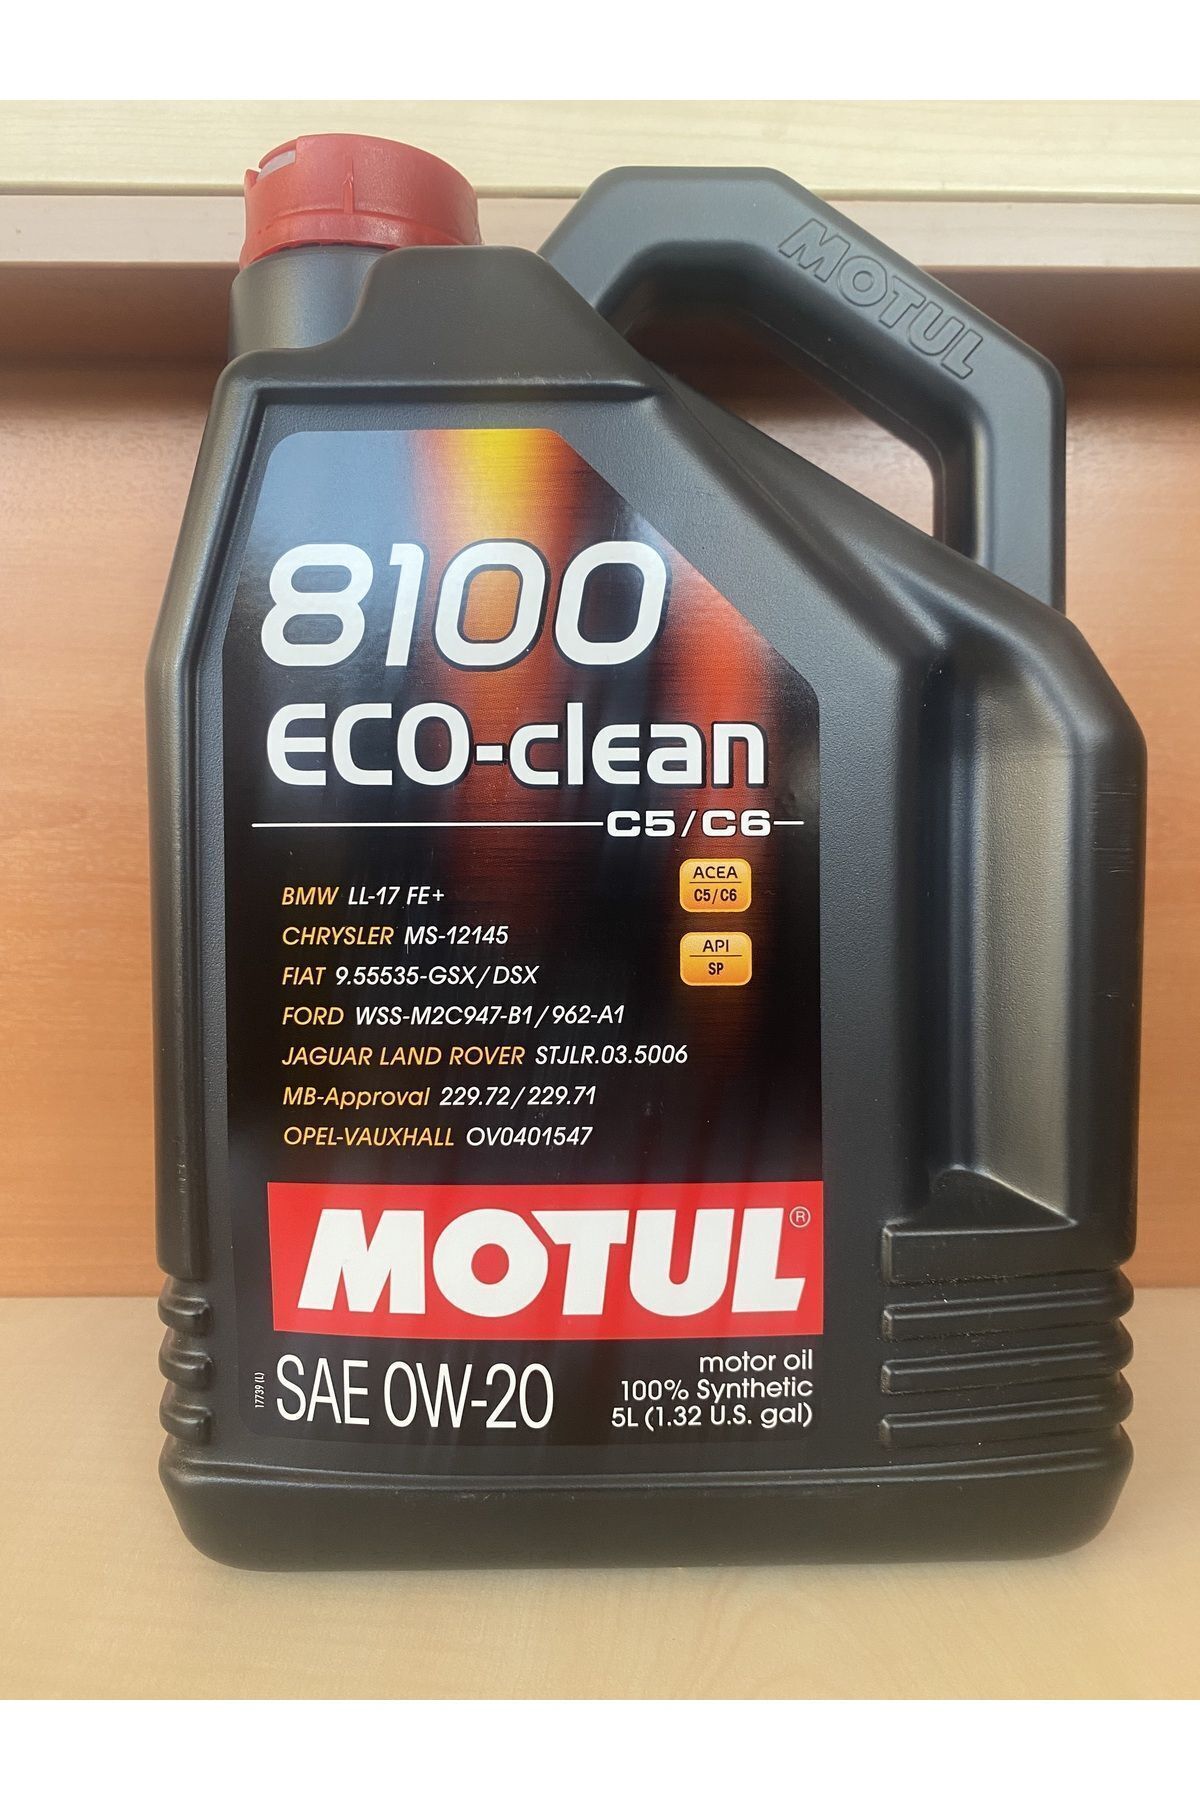 Motul 8100 Eco-clean C5/c6 0w-20 5lt Üt:23 Fiyatı